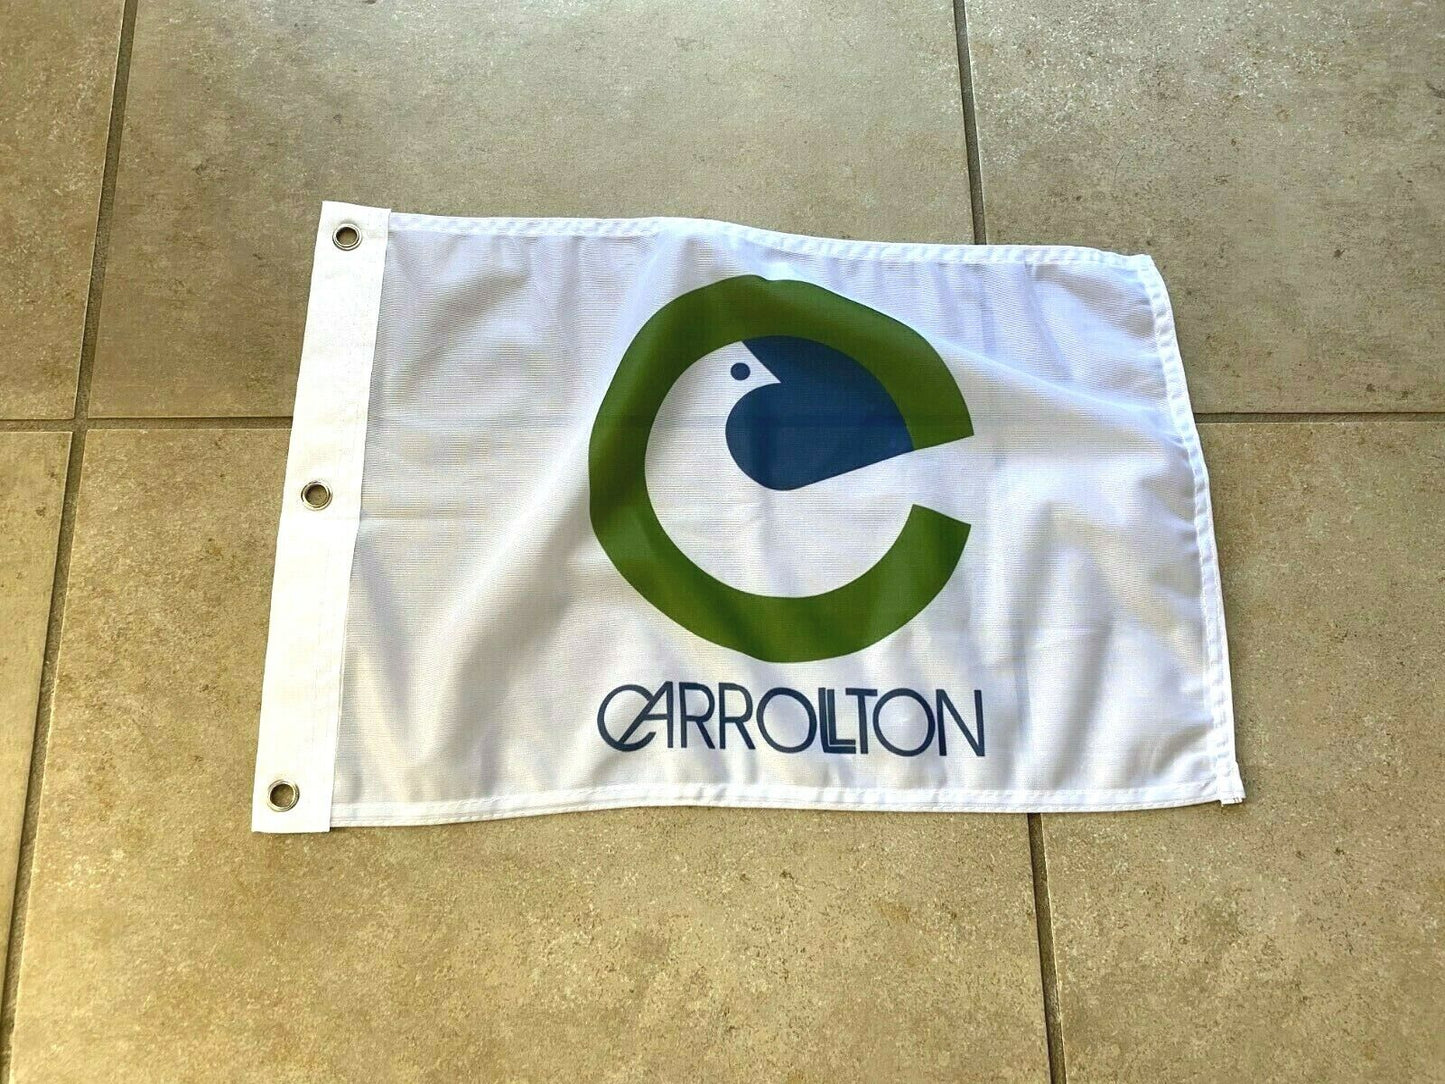 12 x 18 12" x 18" City Carrollton, Texas Flag Banner Grommets36